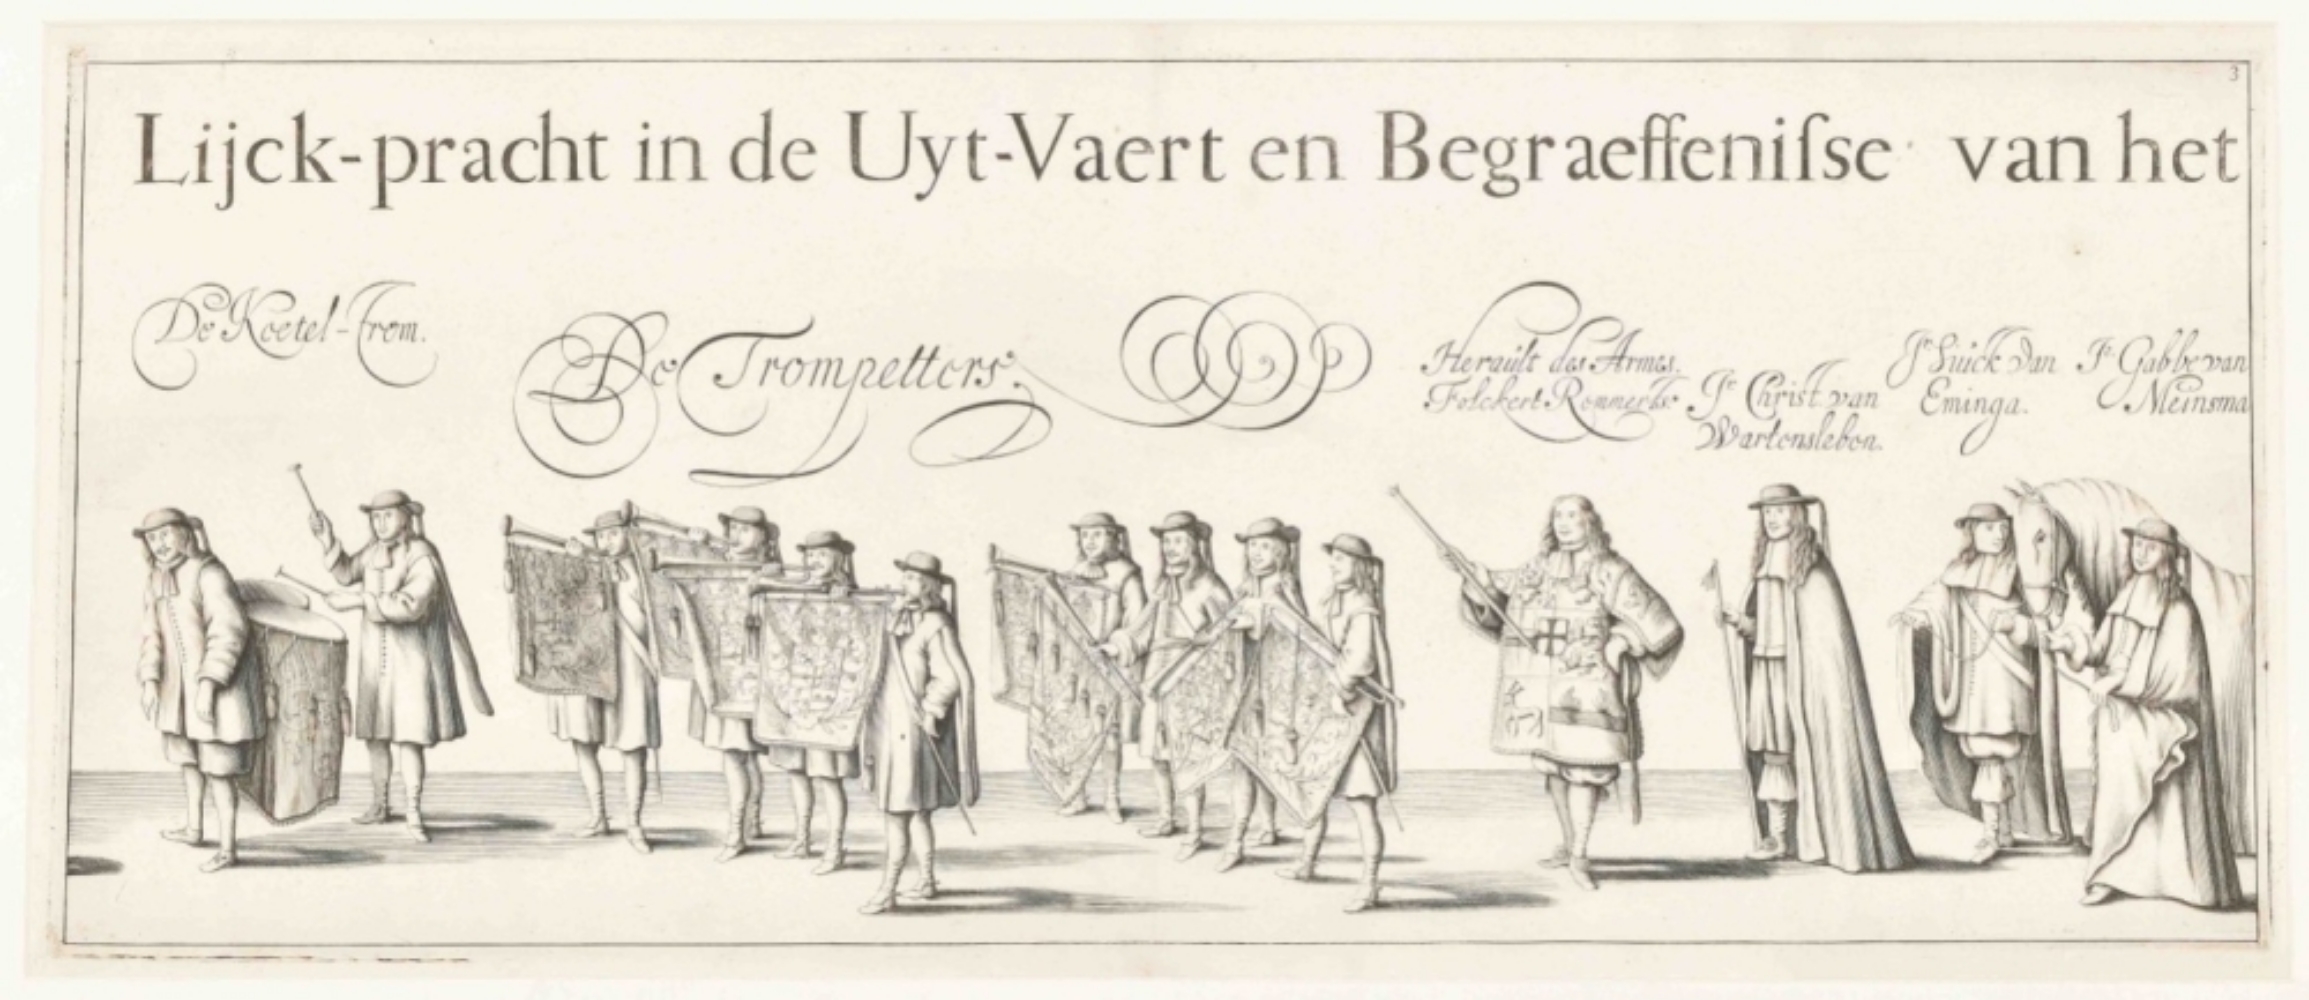 William Frederick, count of Nassau-Dietz. Rouw-staetelijcke lijck-pracht in de uyt-vaert - Image 2 of 10